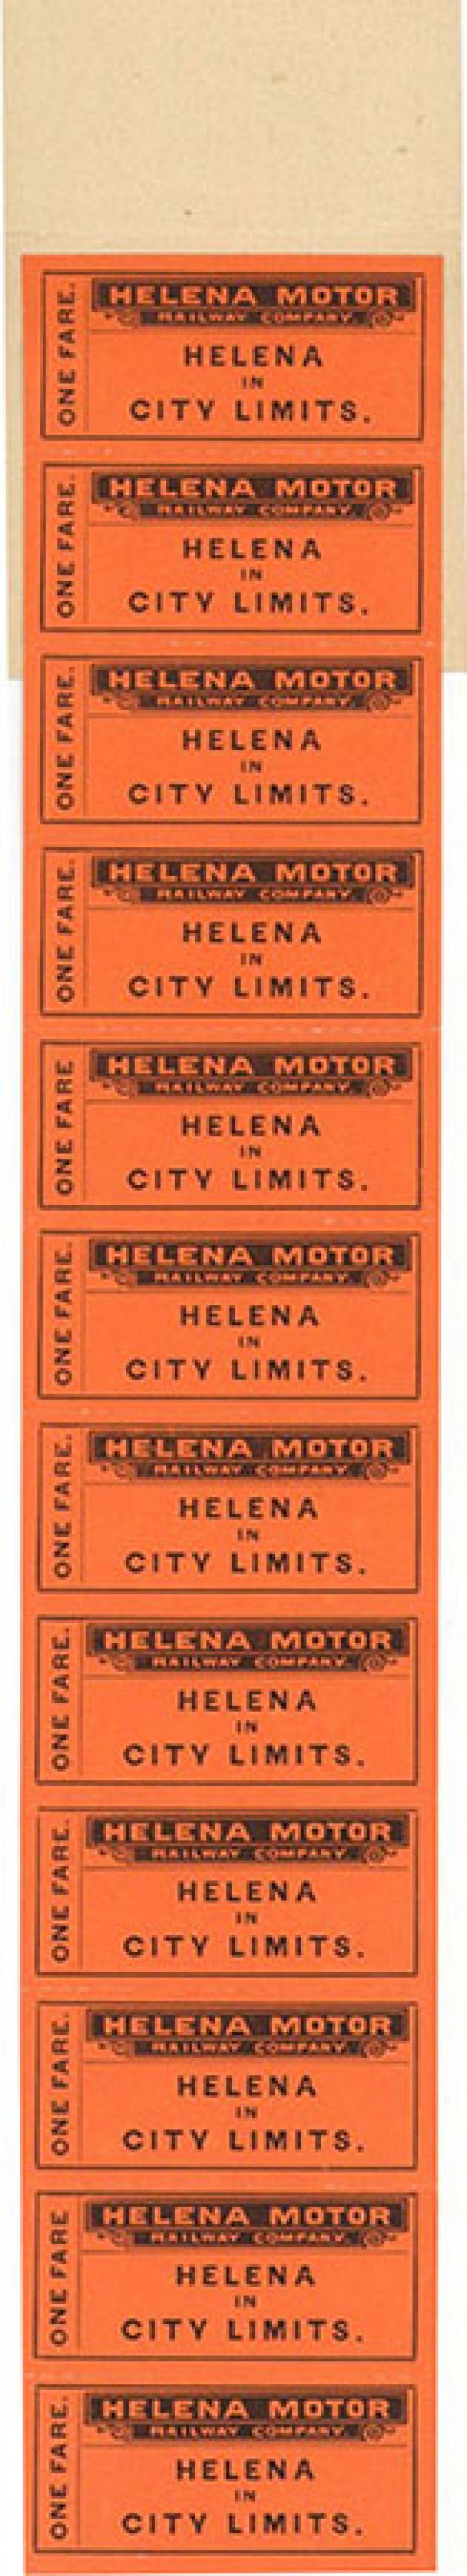 Helena Motor Railway Co. Tickets - Americana